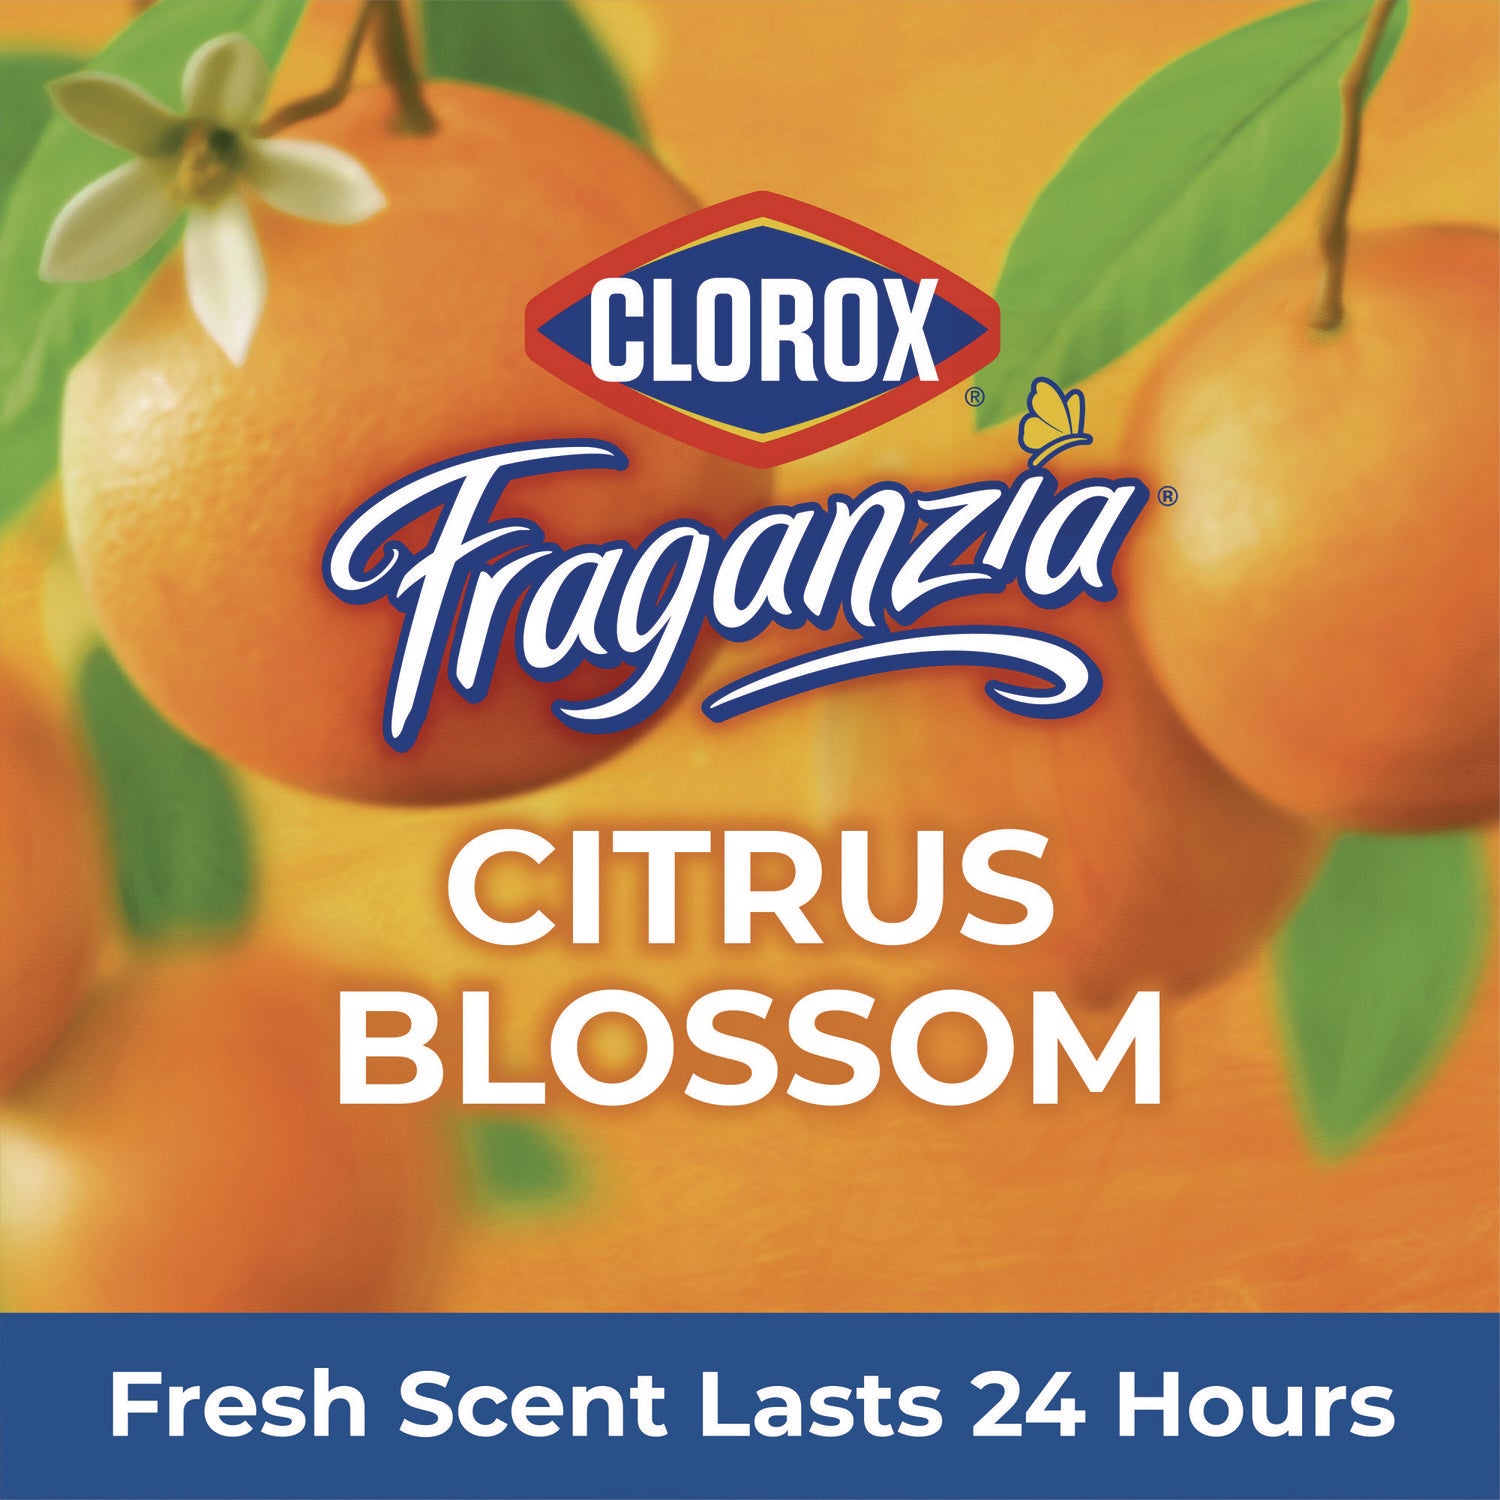 cloroxpro-fraganzia-multi-purpose-cleaner-concentrate-citrus-blossom-scent-175-oz-bottle-3-carton_clo60615ct - 7